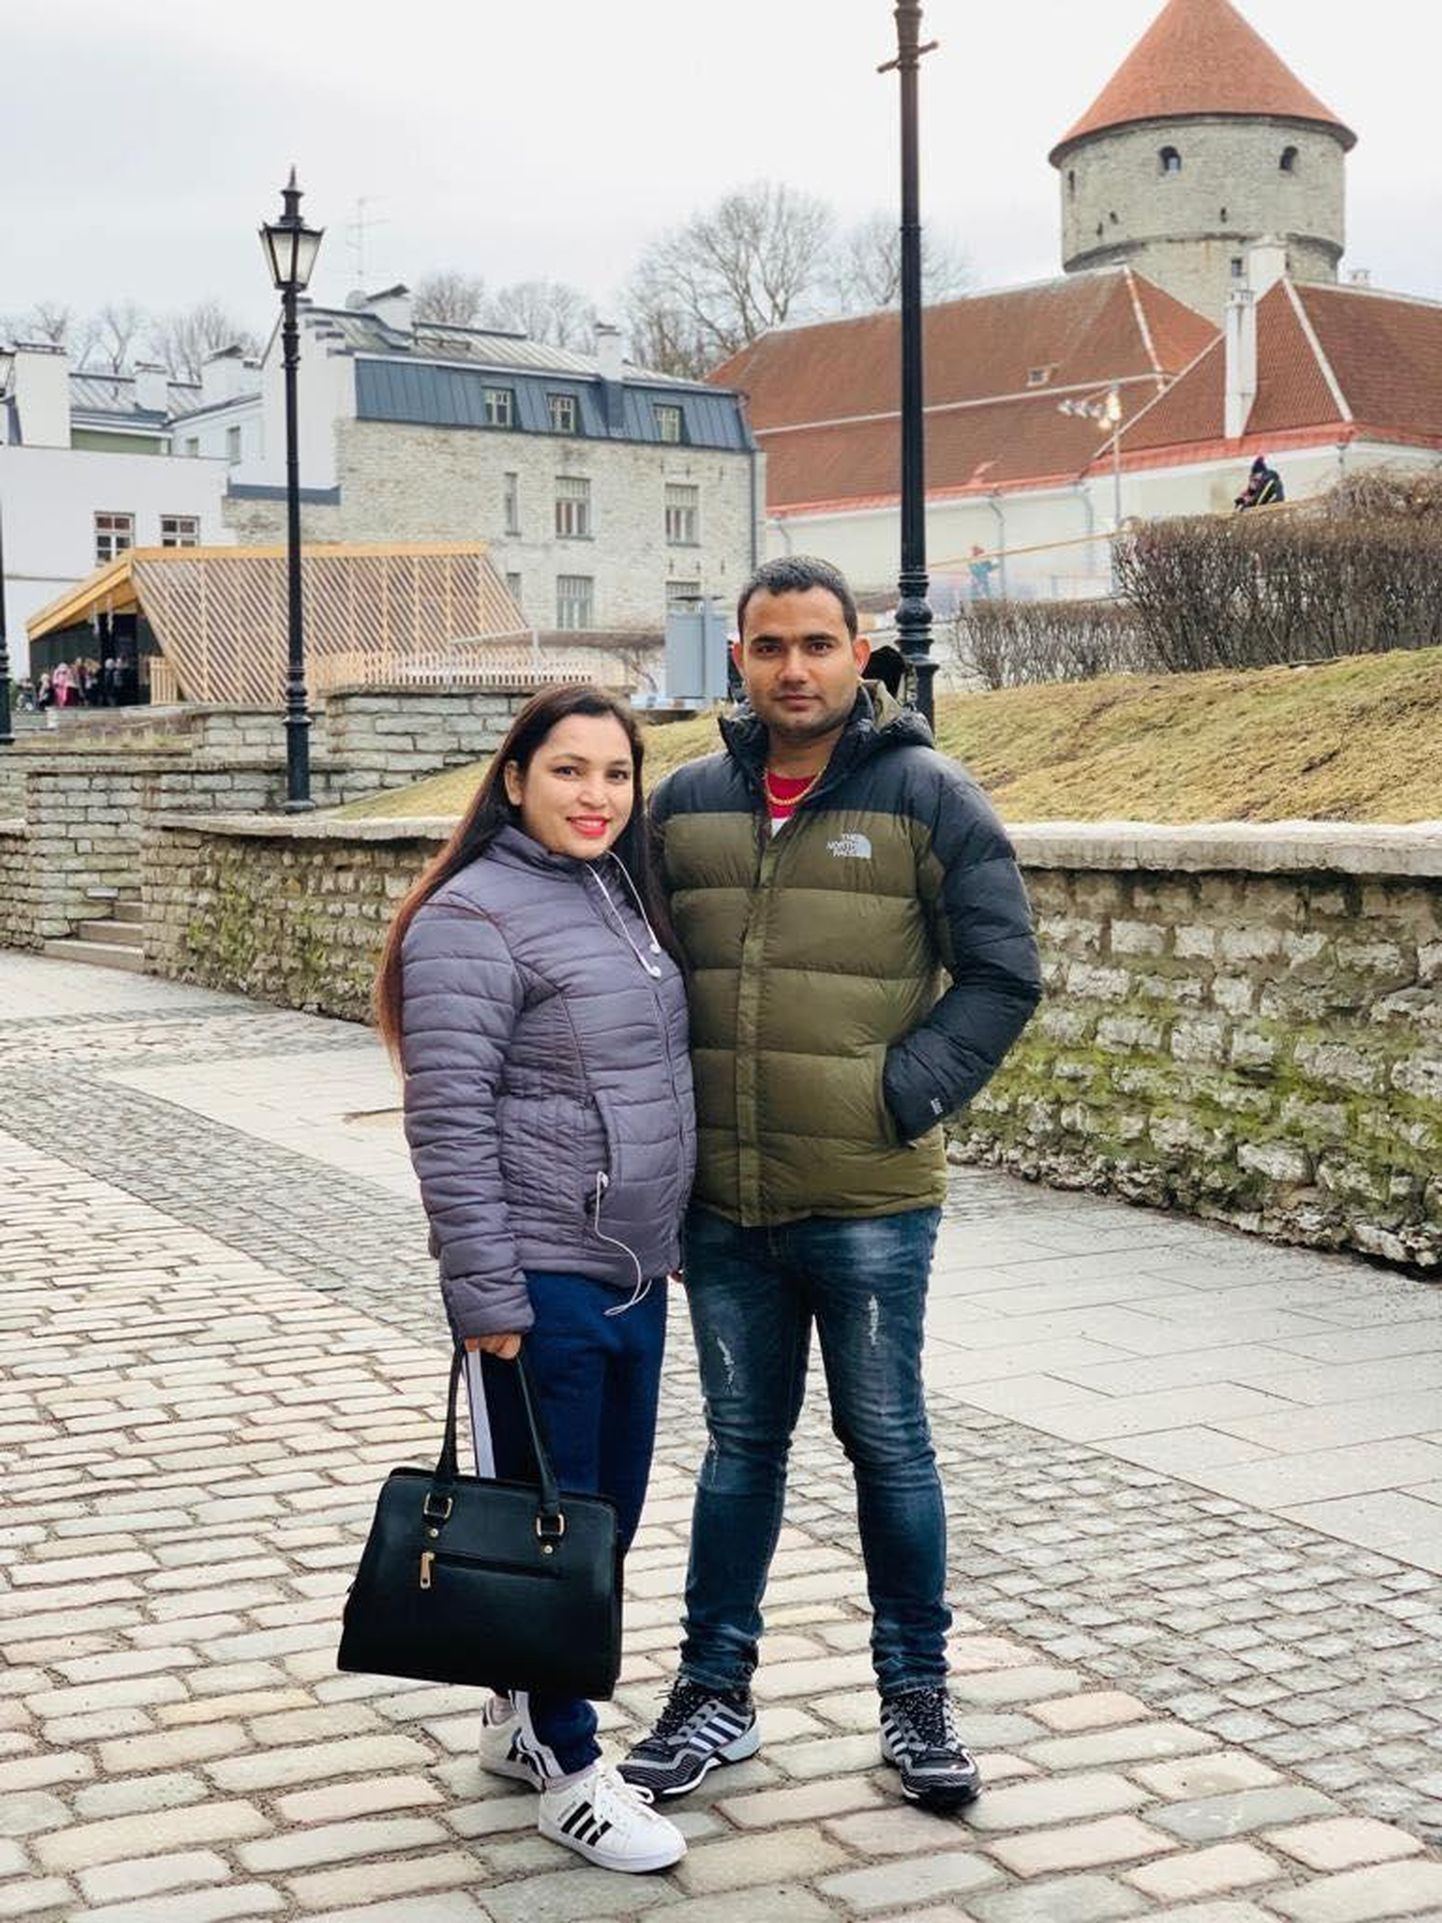 Реэта Бандари с мужем в Таллинне, когда они еще не провели ночь в камере и ничего не знали о том, что вид на жительство будет аннулирован.